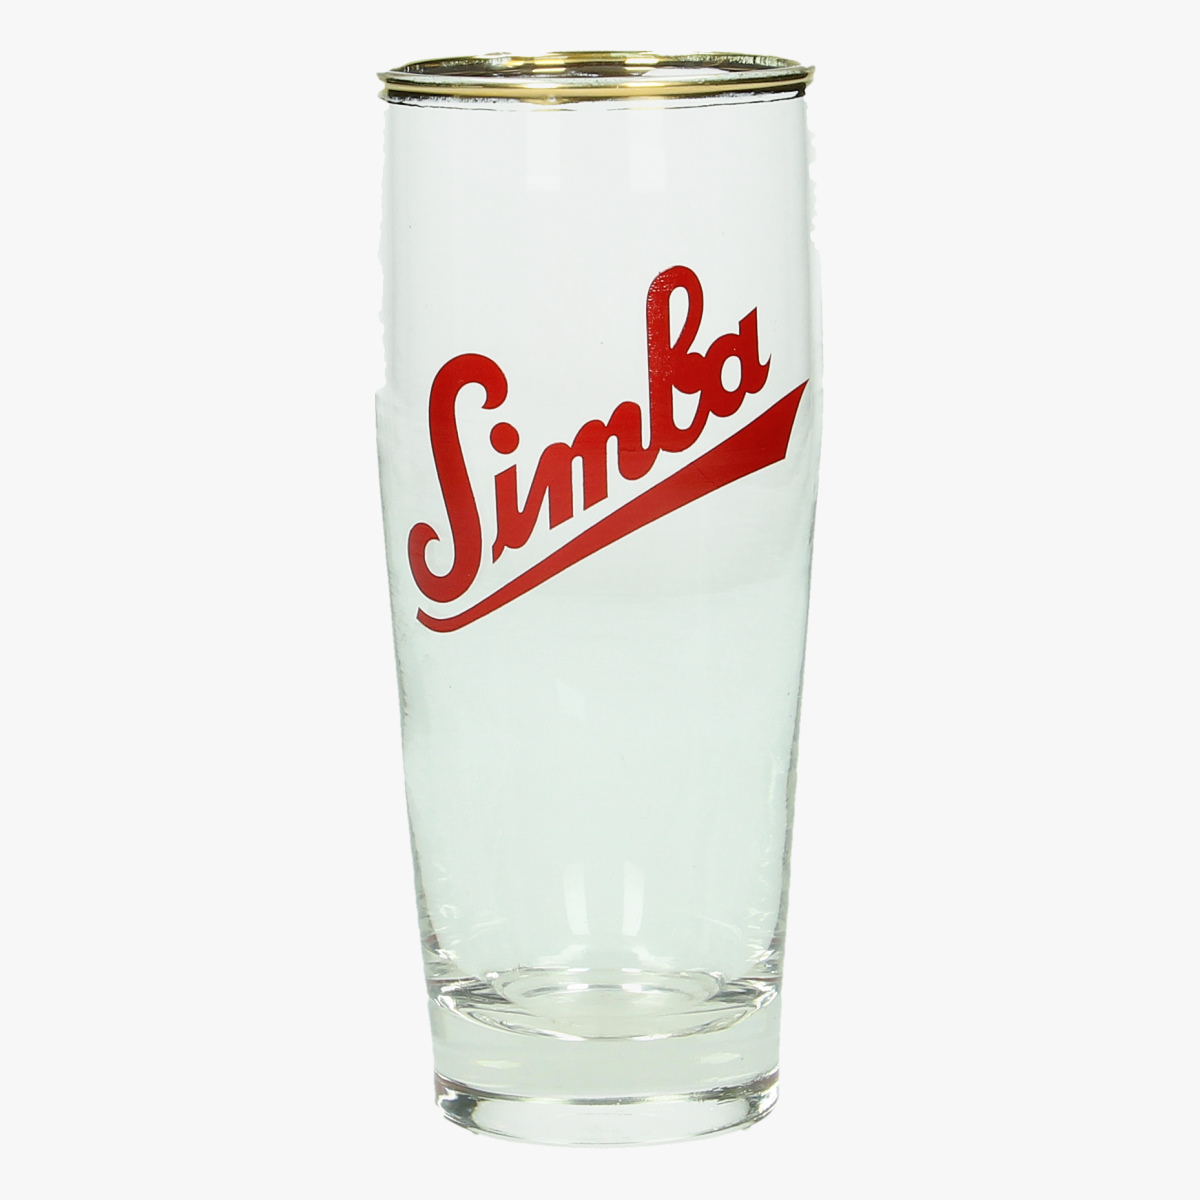 Afbeeldingen van bier glas simba